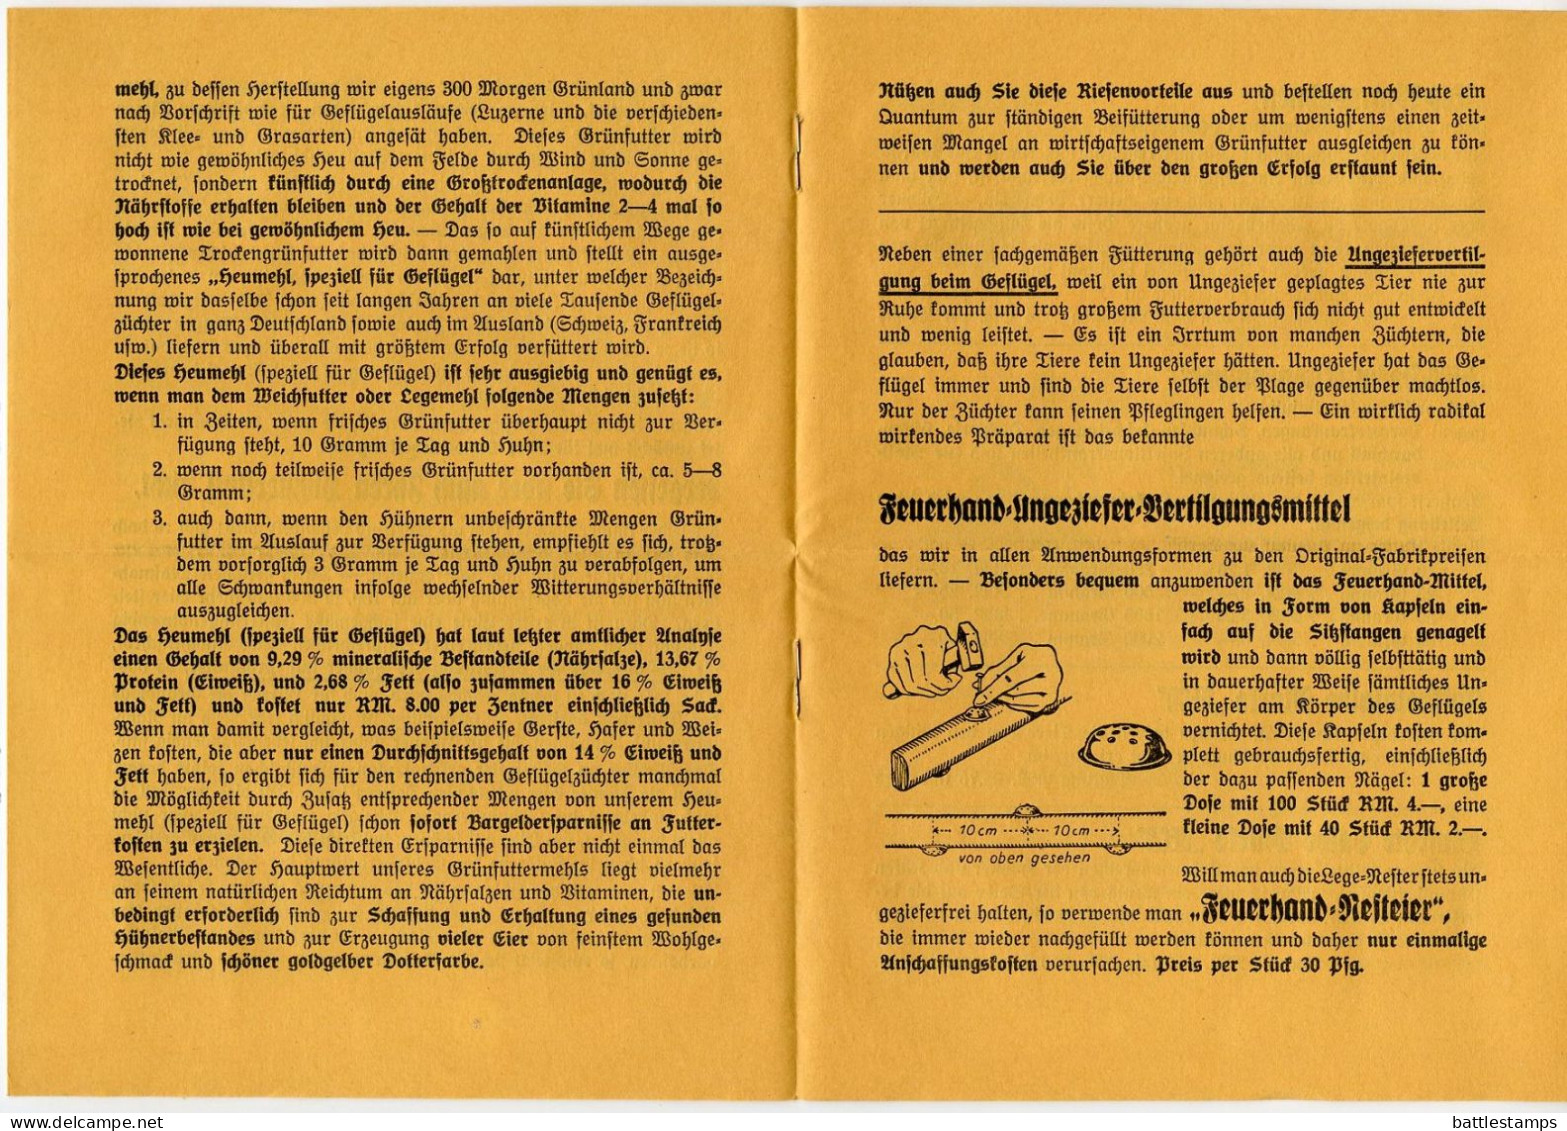 Germany 1936 Cover /w Letter & Advert; Trabitz - M.S. Hoven, Gutsbesitz, Mühlen-u. Sägewerk to Schiplage; 3pf Hindenburg